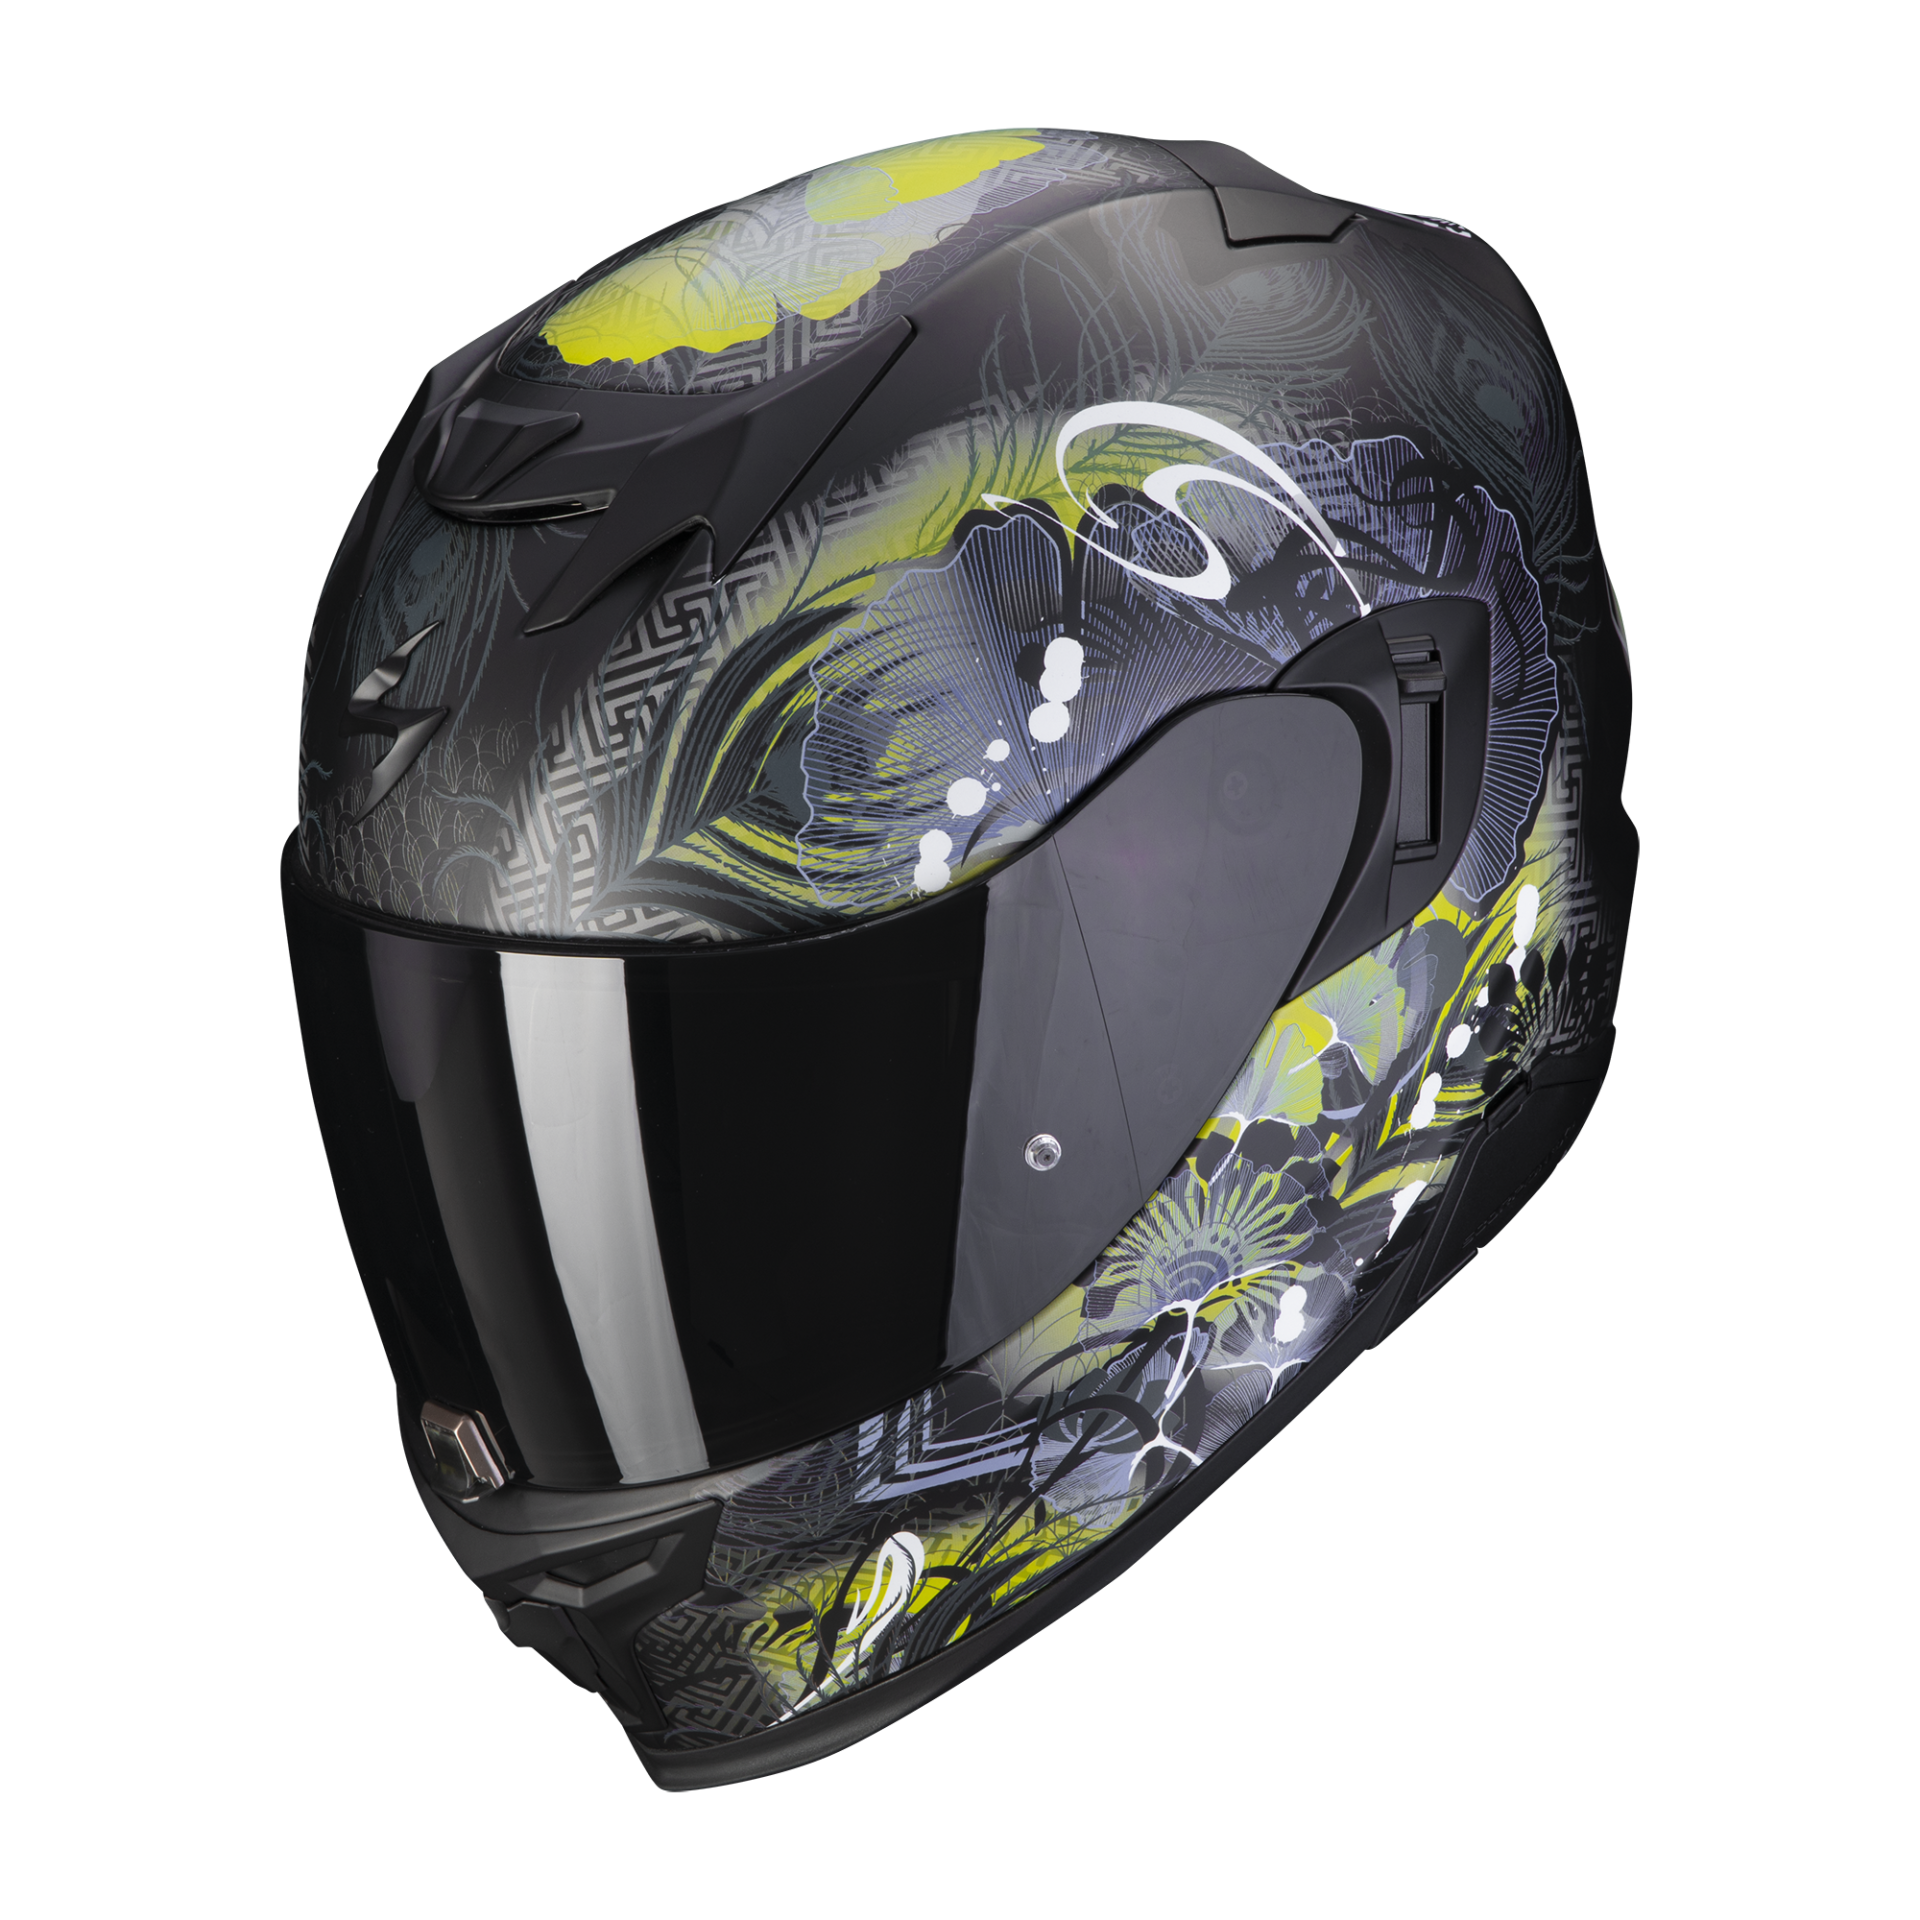 Image of Scorpion Exo-520 Evo Air Melrose Matt Black-Yellow Full Face Helmet Size M EN